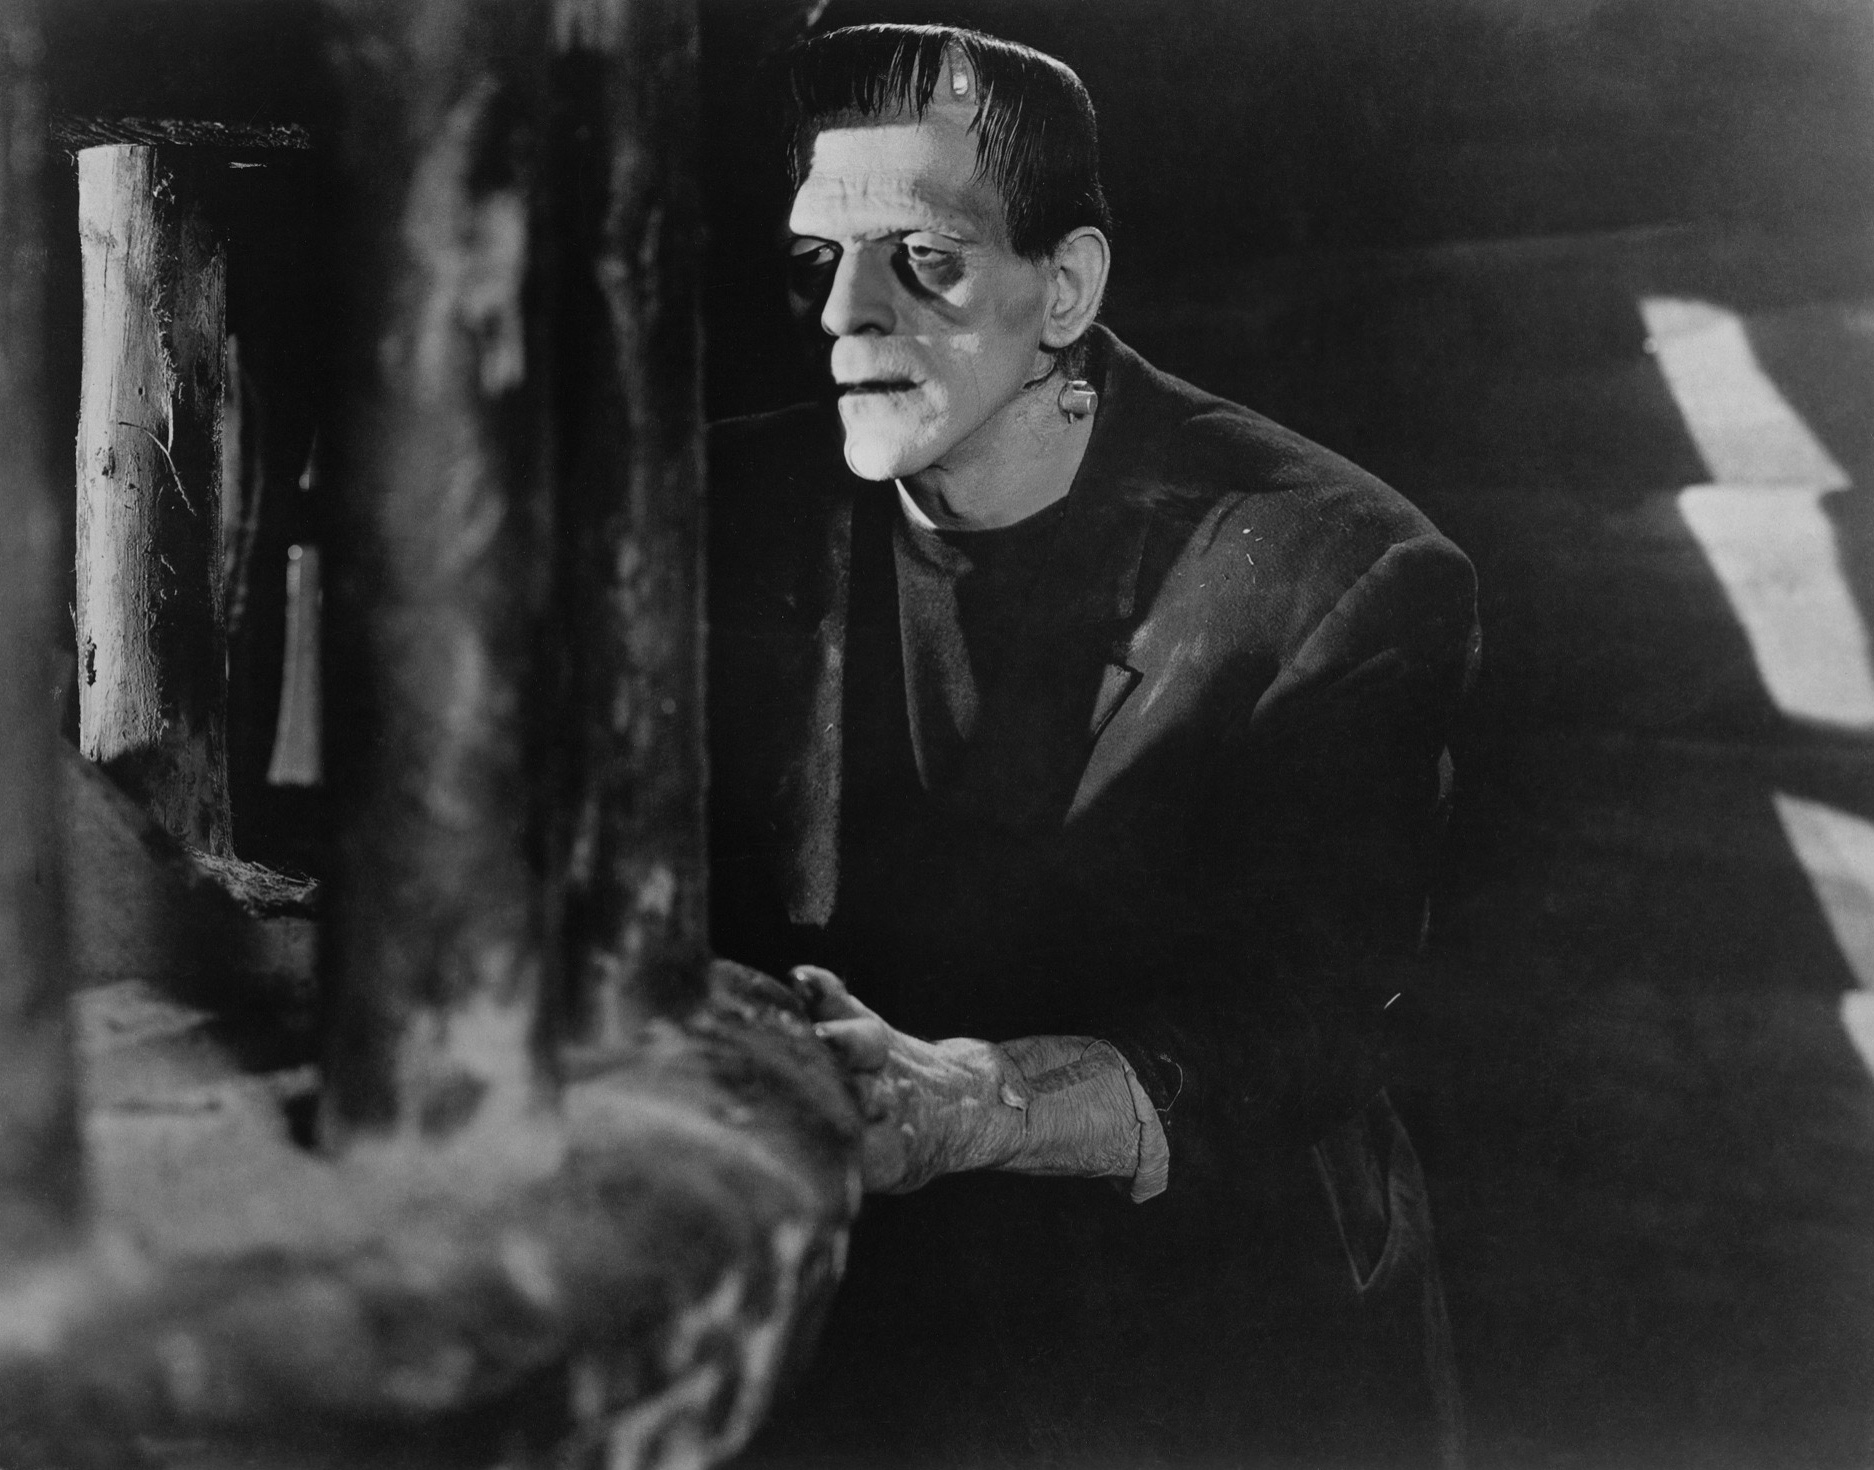 Frankenstein Stills - Classic Movies Photo (19760768) - Fanpop1874 x 1470